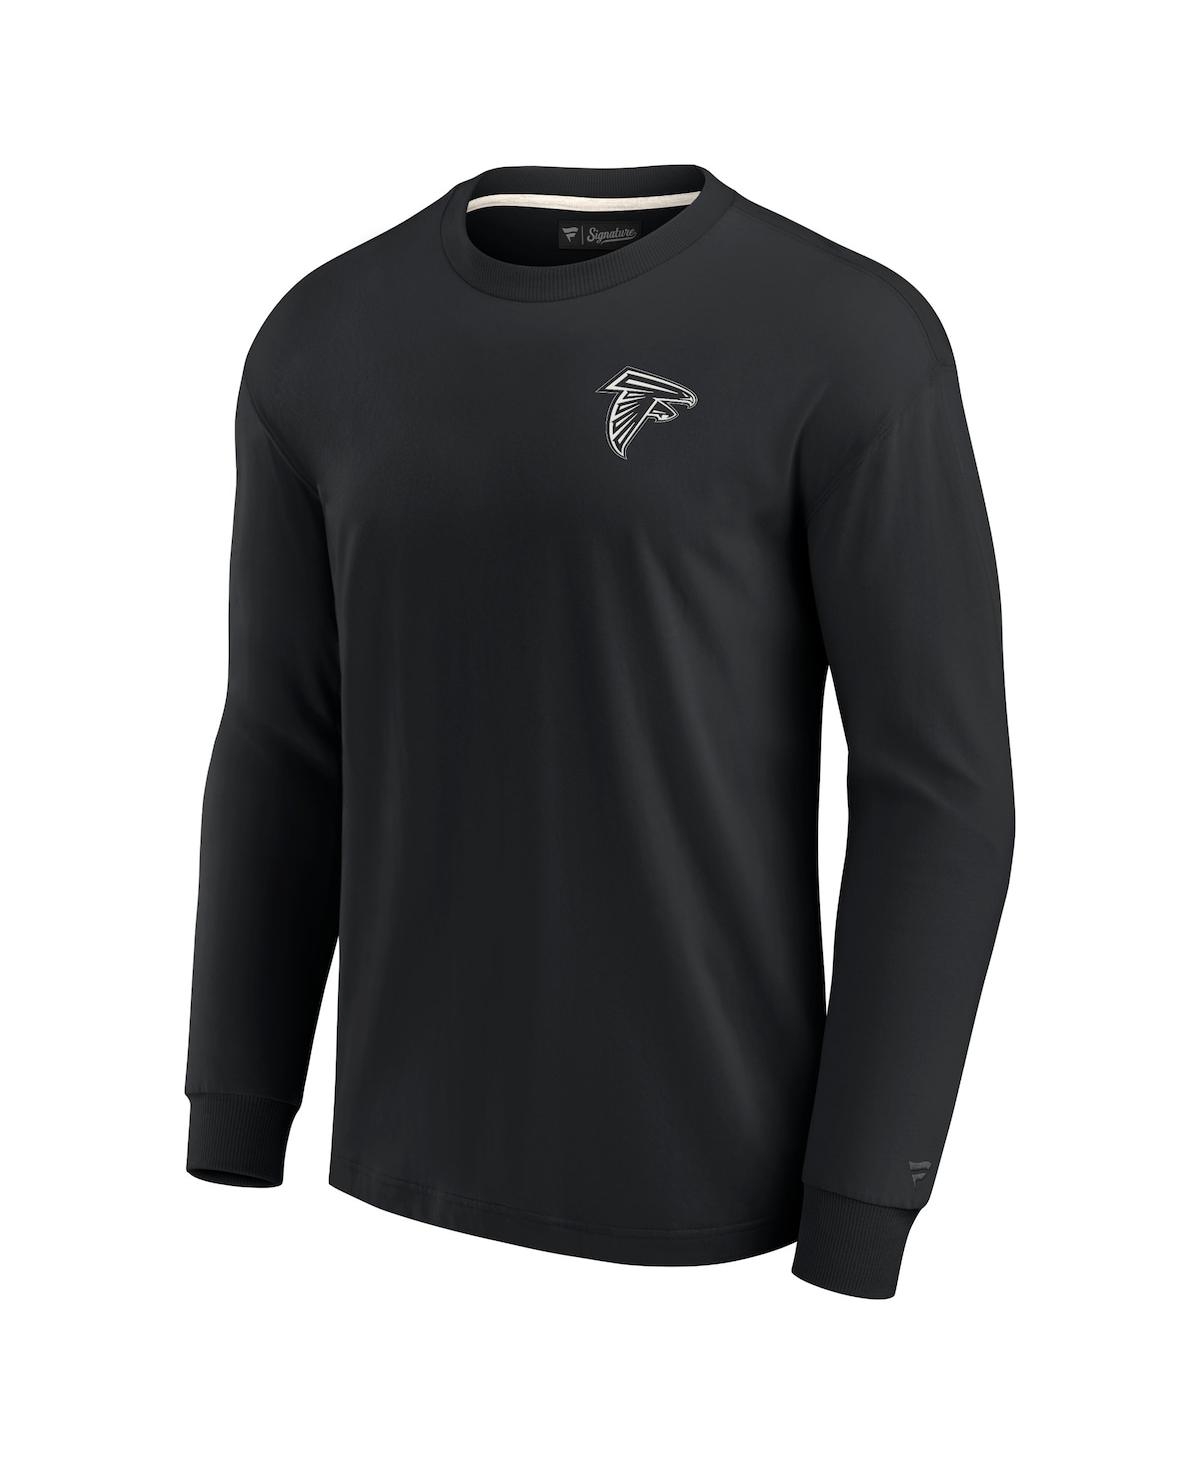 Shop Fanatics Signature Men's And Women's  Black Atlanta Falcons Super Soft Long Sleeve T-shirt